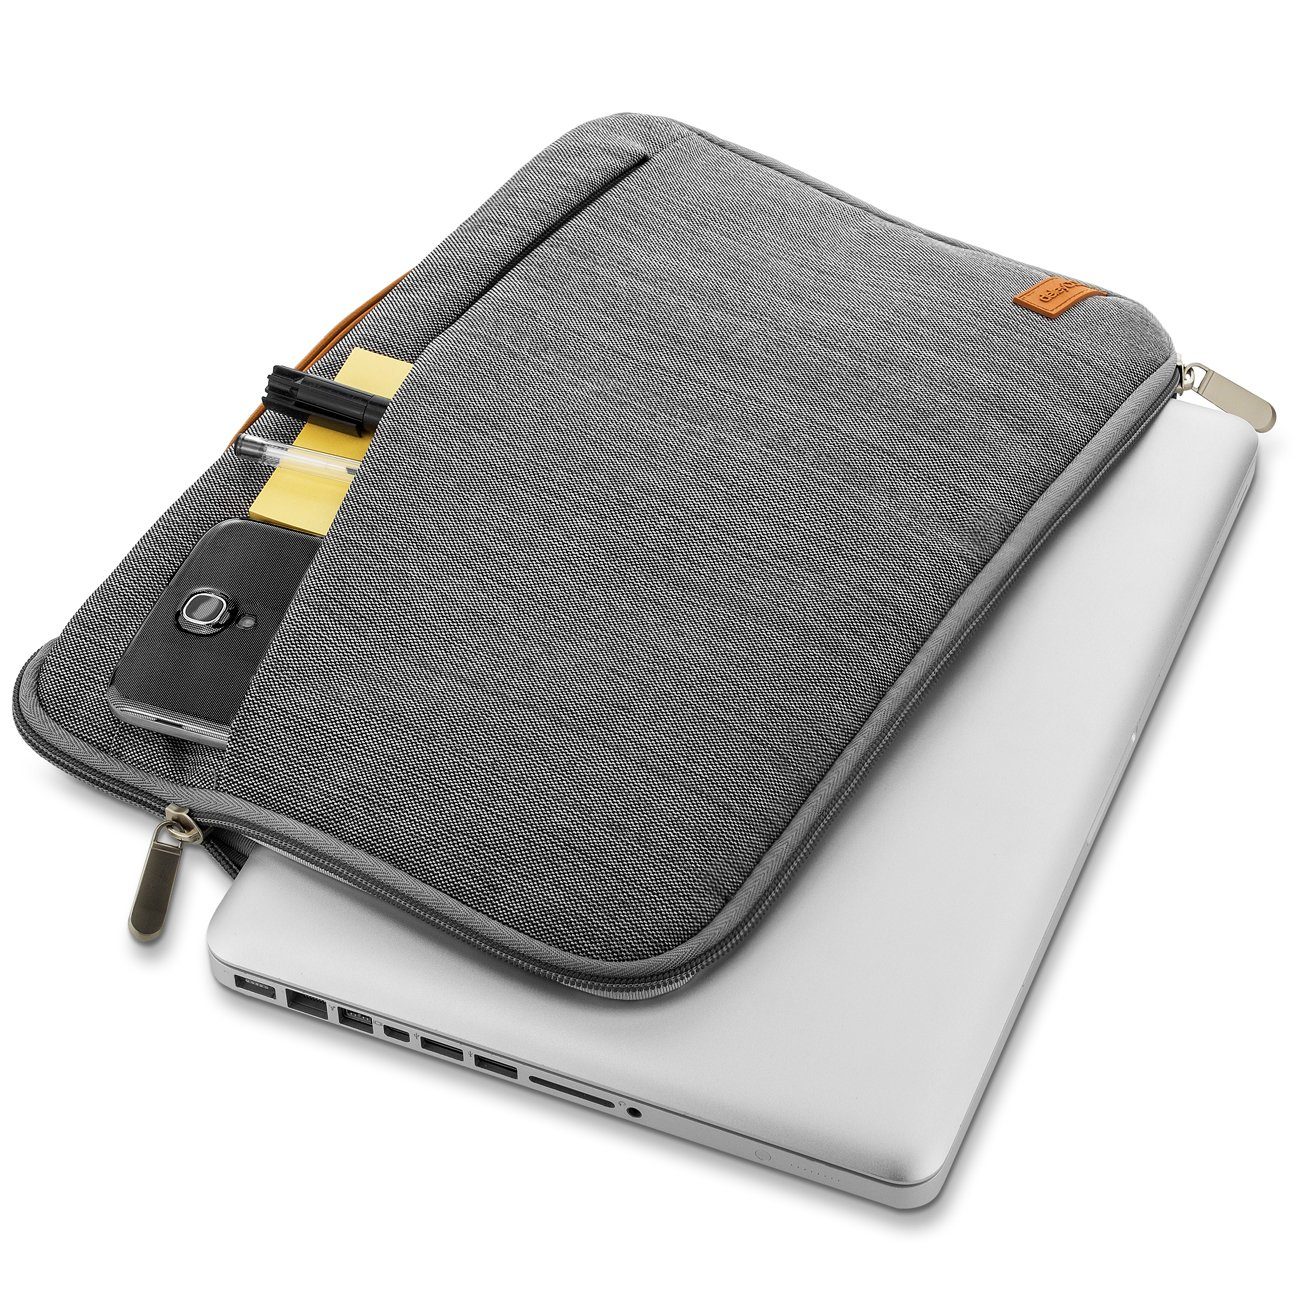 bis 15,6" / deleyCON deleyCON (39,6cm) Businesstasche Notebook Laptop - für Notebooktasche